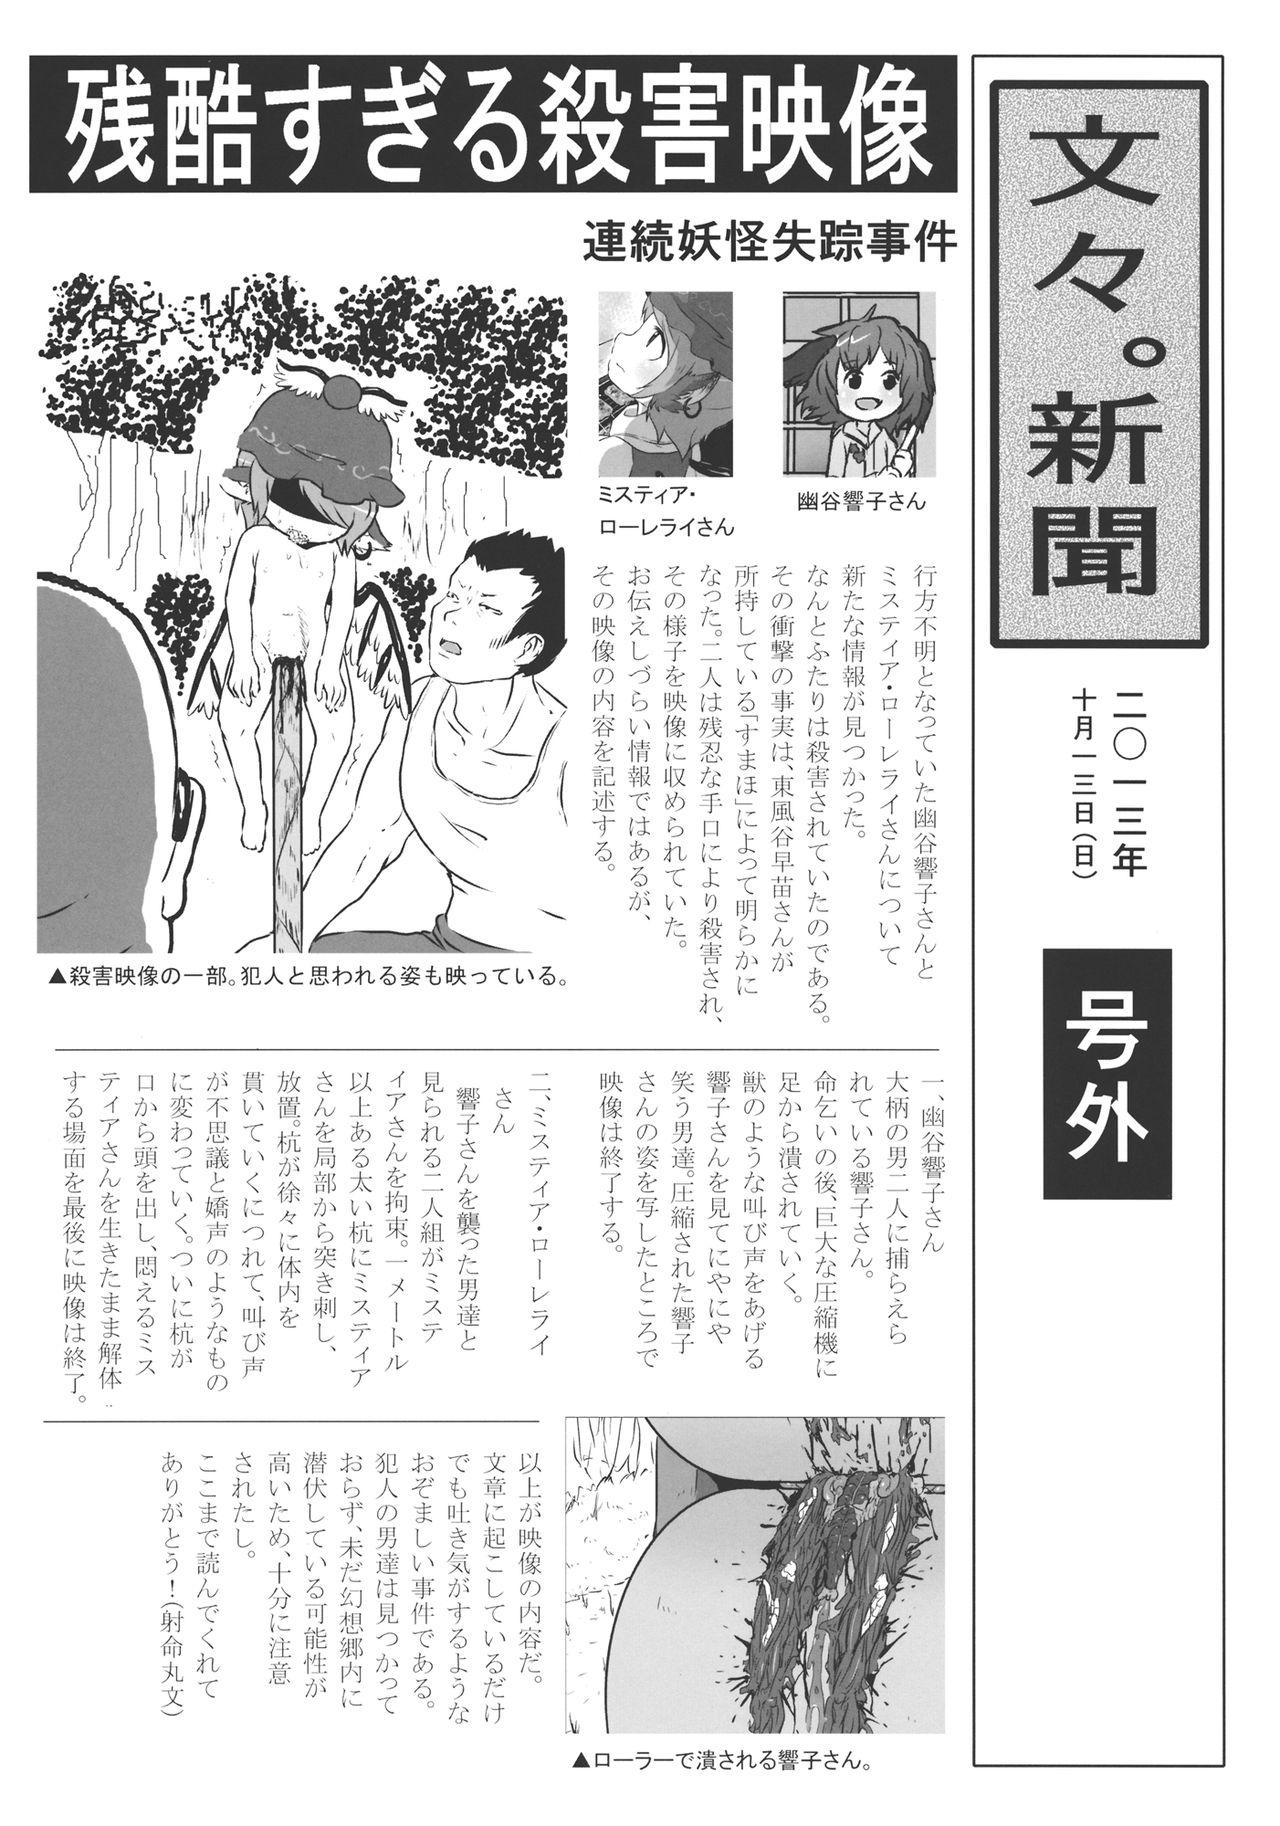 Real Amature Porn (Kouroumu 9) [02 (Harasaki)] (Kojin Satsuei)(Touhou)(Kouroumu 9)[02] Touhou snuff vol.3 Kawashiro Nitori (Mushuusei) (Loli-kei Youjo no Kirei na Hadaka wo Suki Houdai shichai mashita!).avi (Touhou Project) [布洛基个人汉化] - Touhou project - Page 4